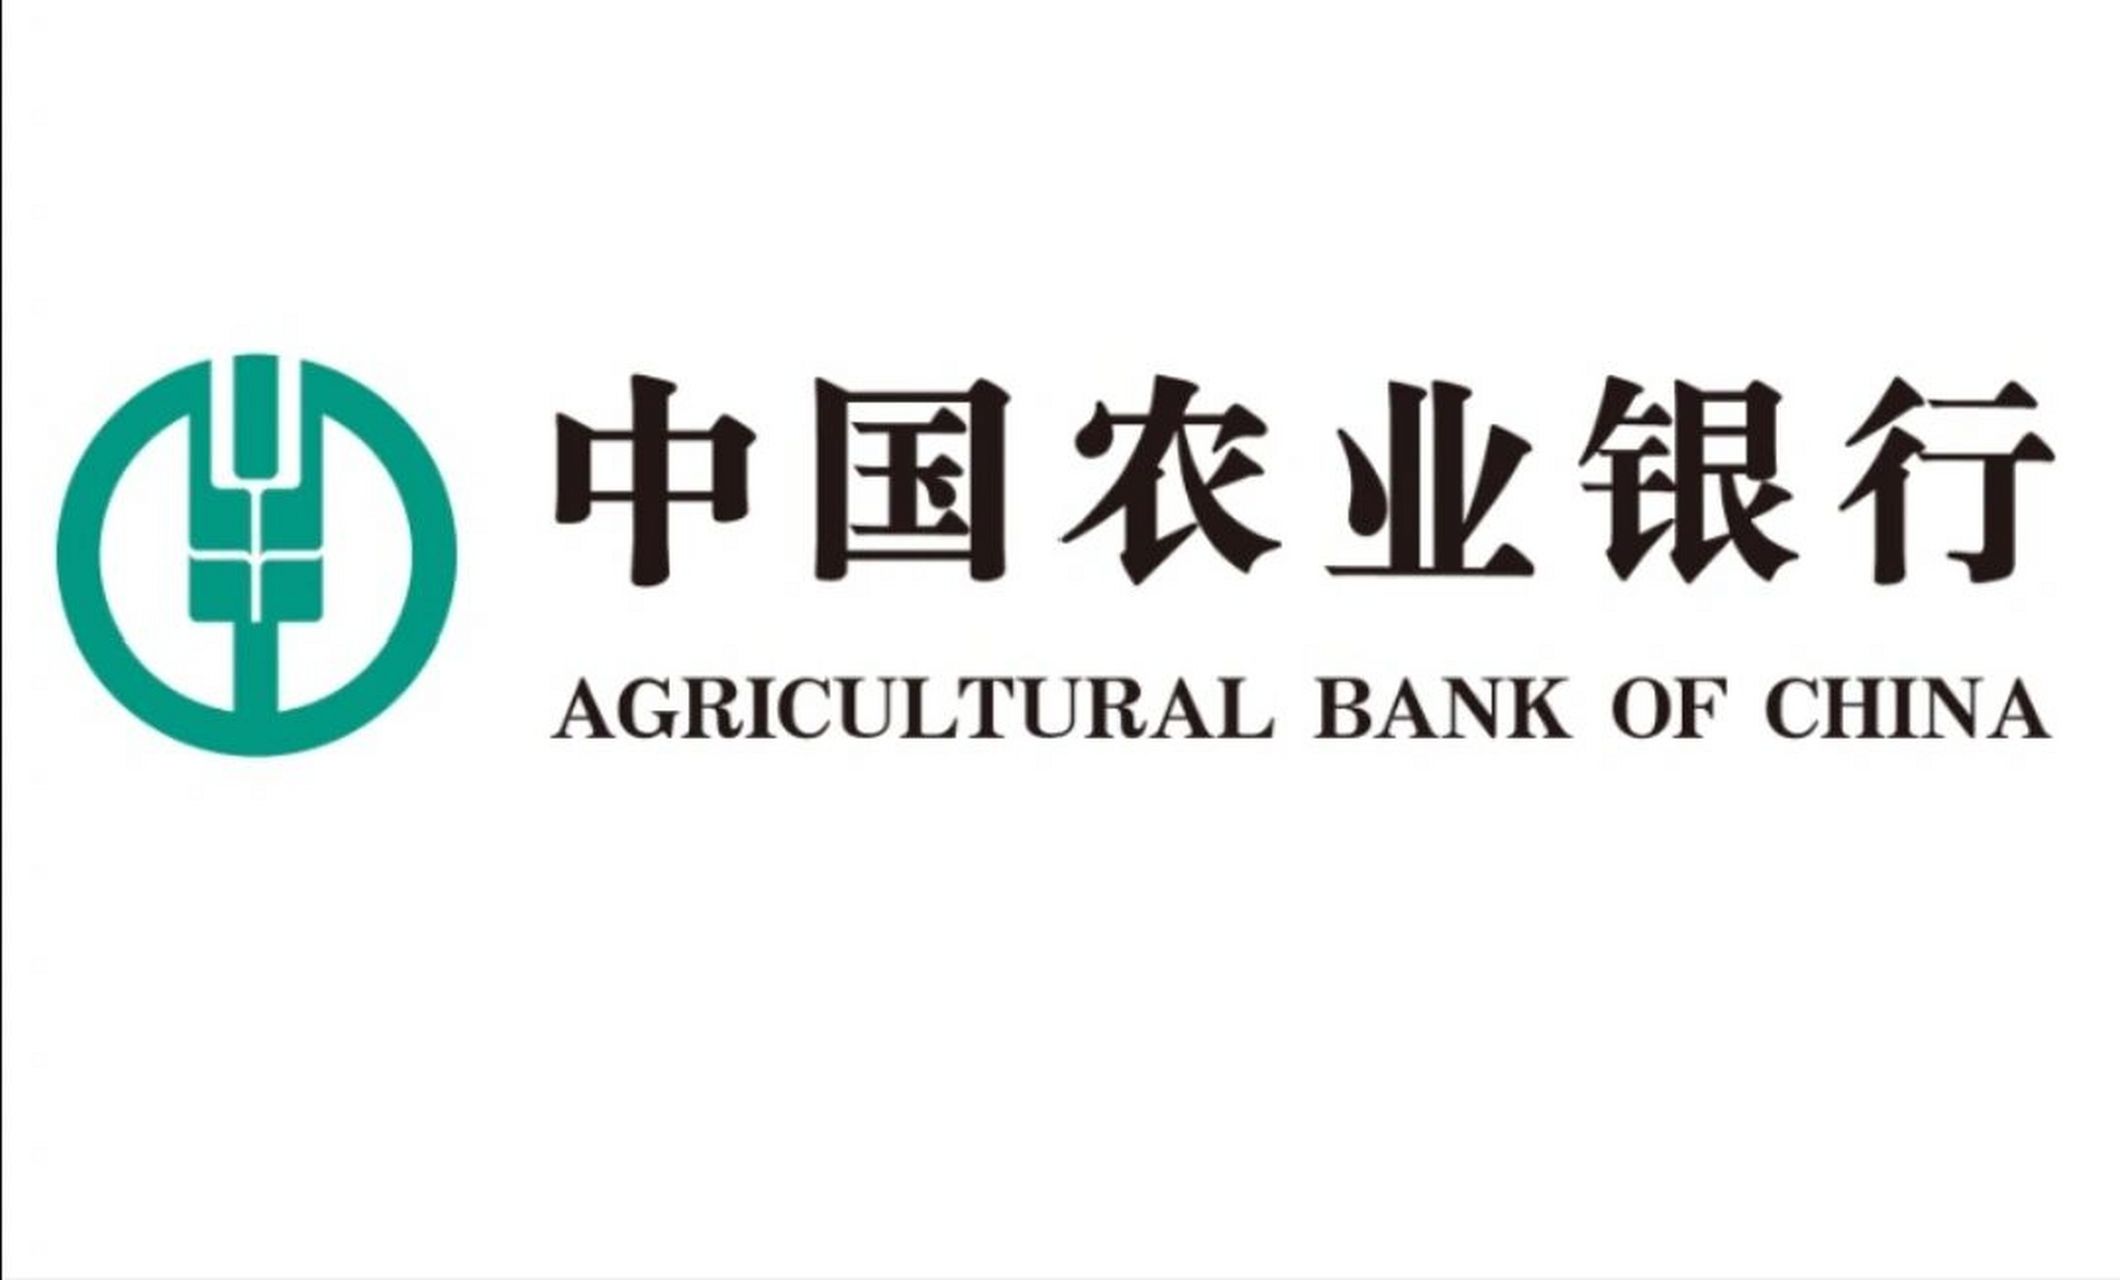 农行logo背景图图片